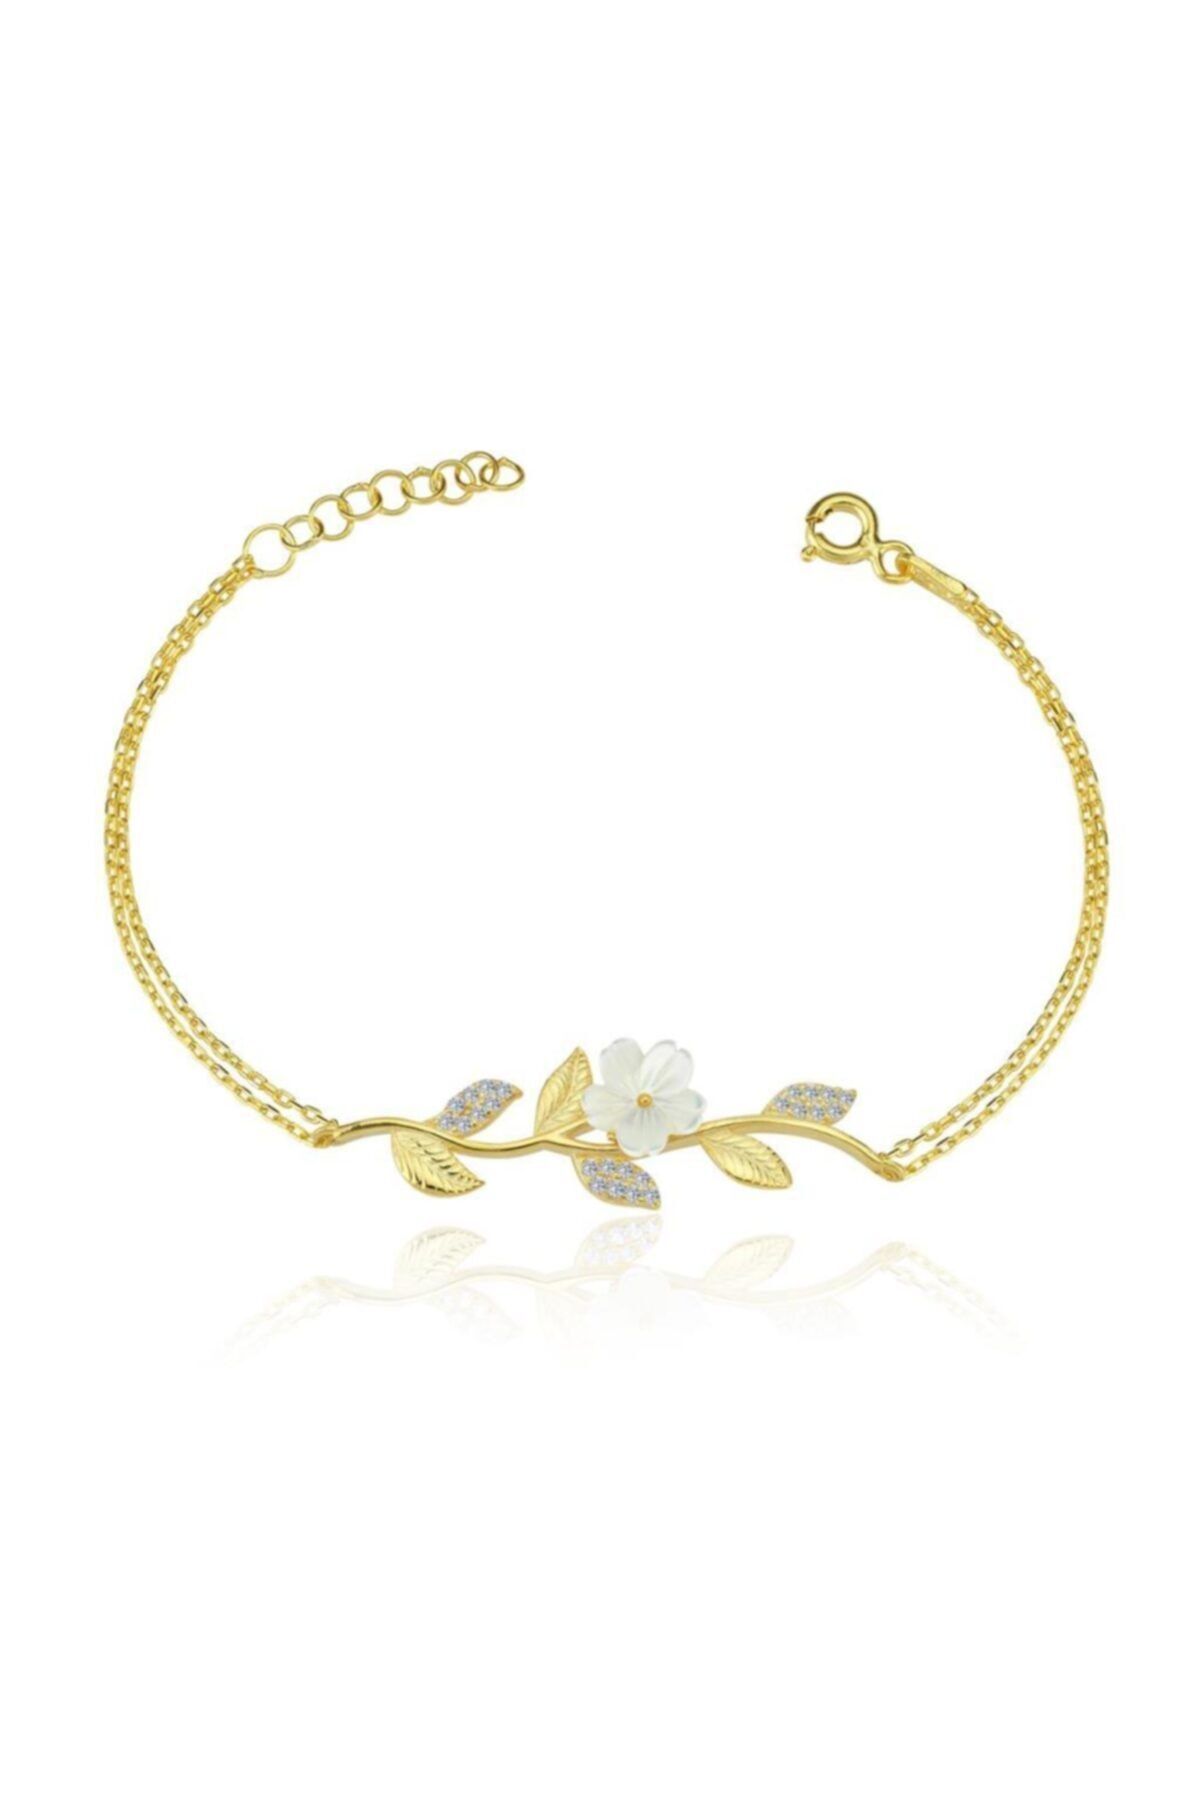 Mia Vento Manolya Çiçeği Demeti Gold Renk Gümüş Bileklik